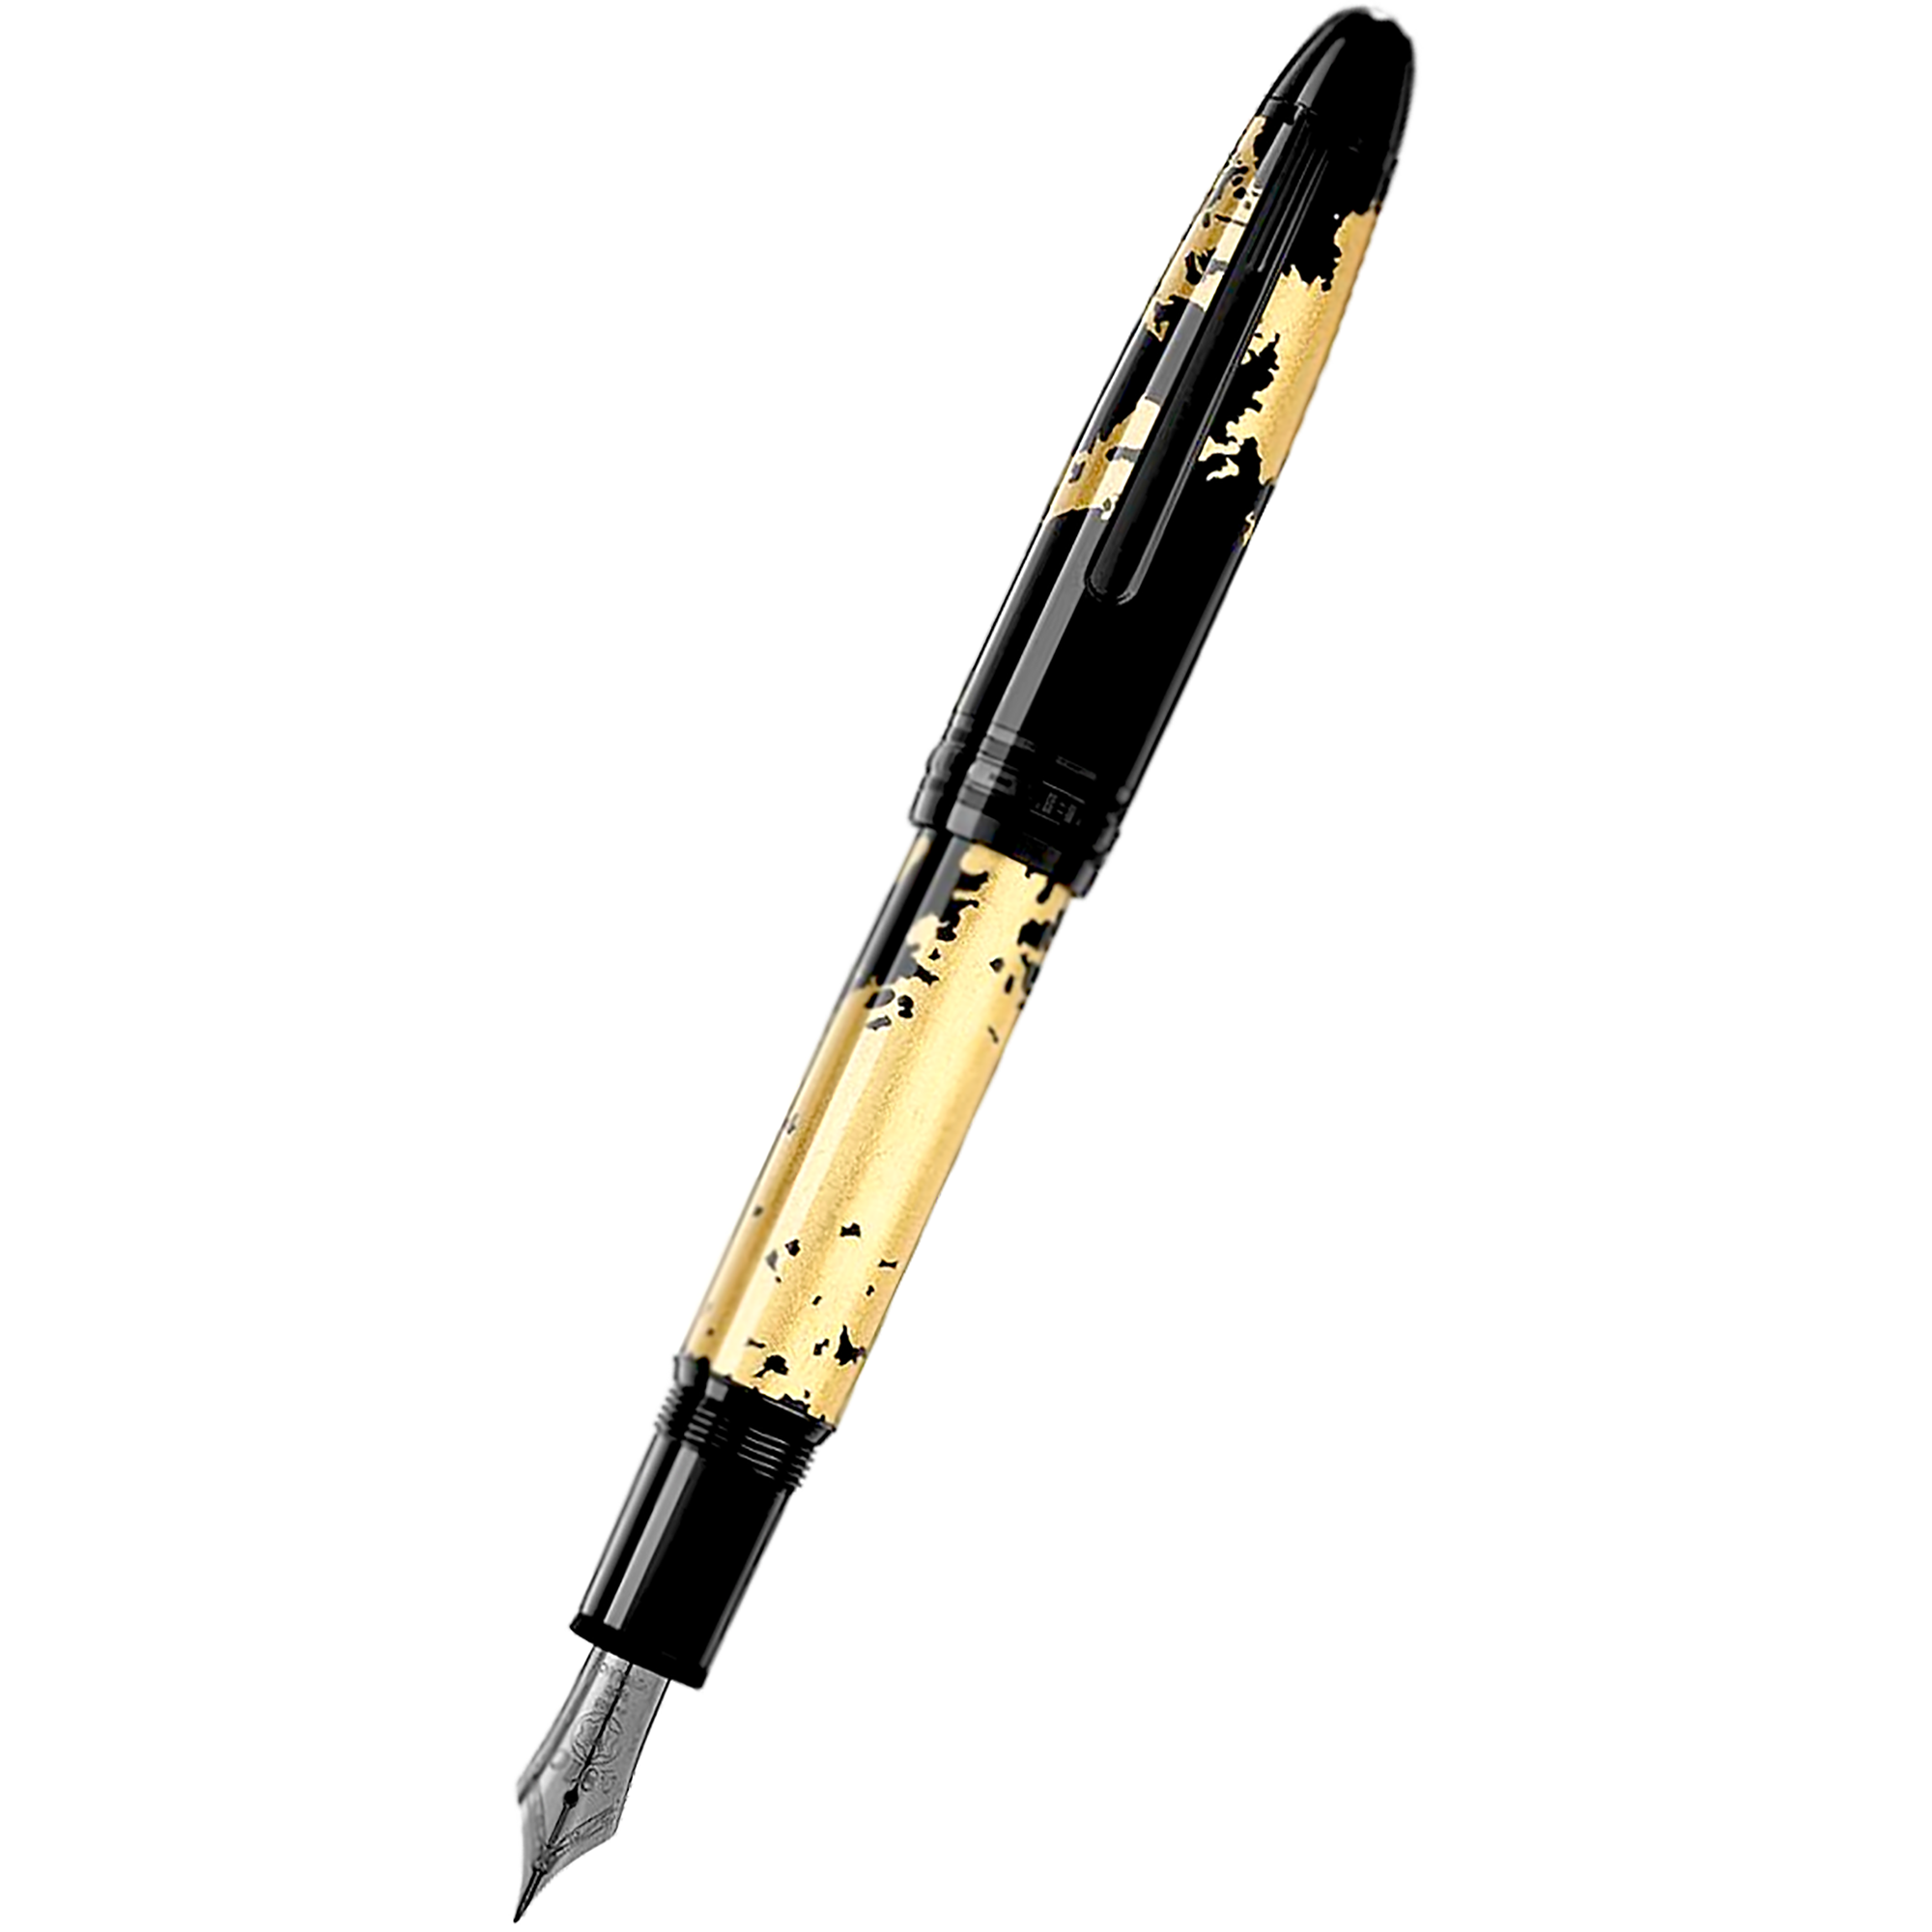 Montblanc Pens for Sale - Buy Montblanc Pens Online - Pen Boutique Ltd